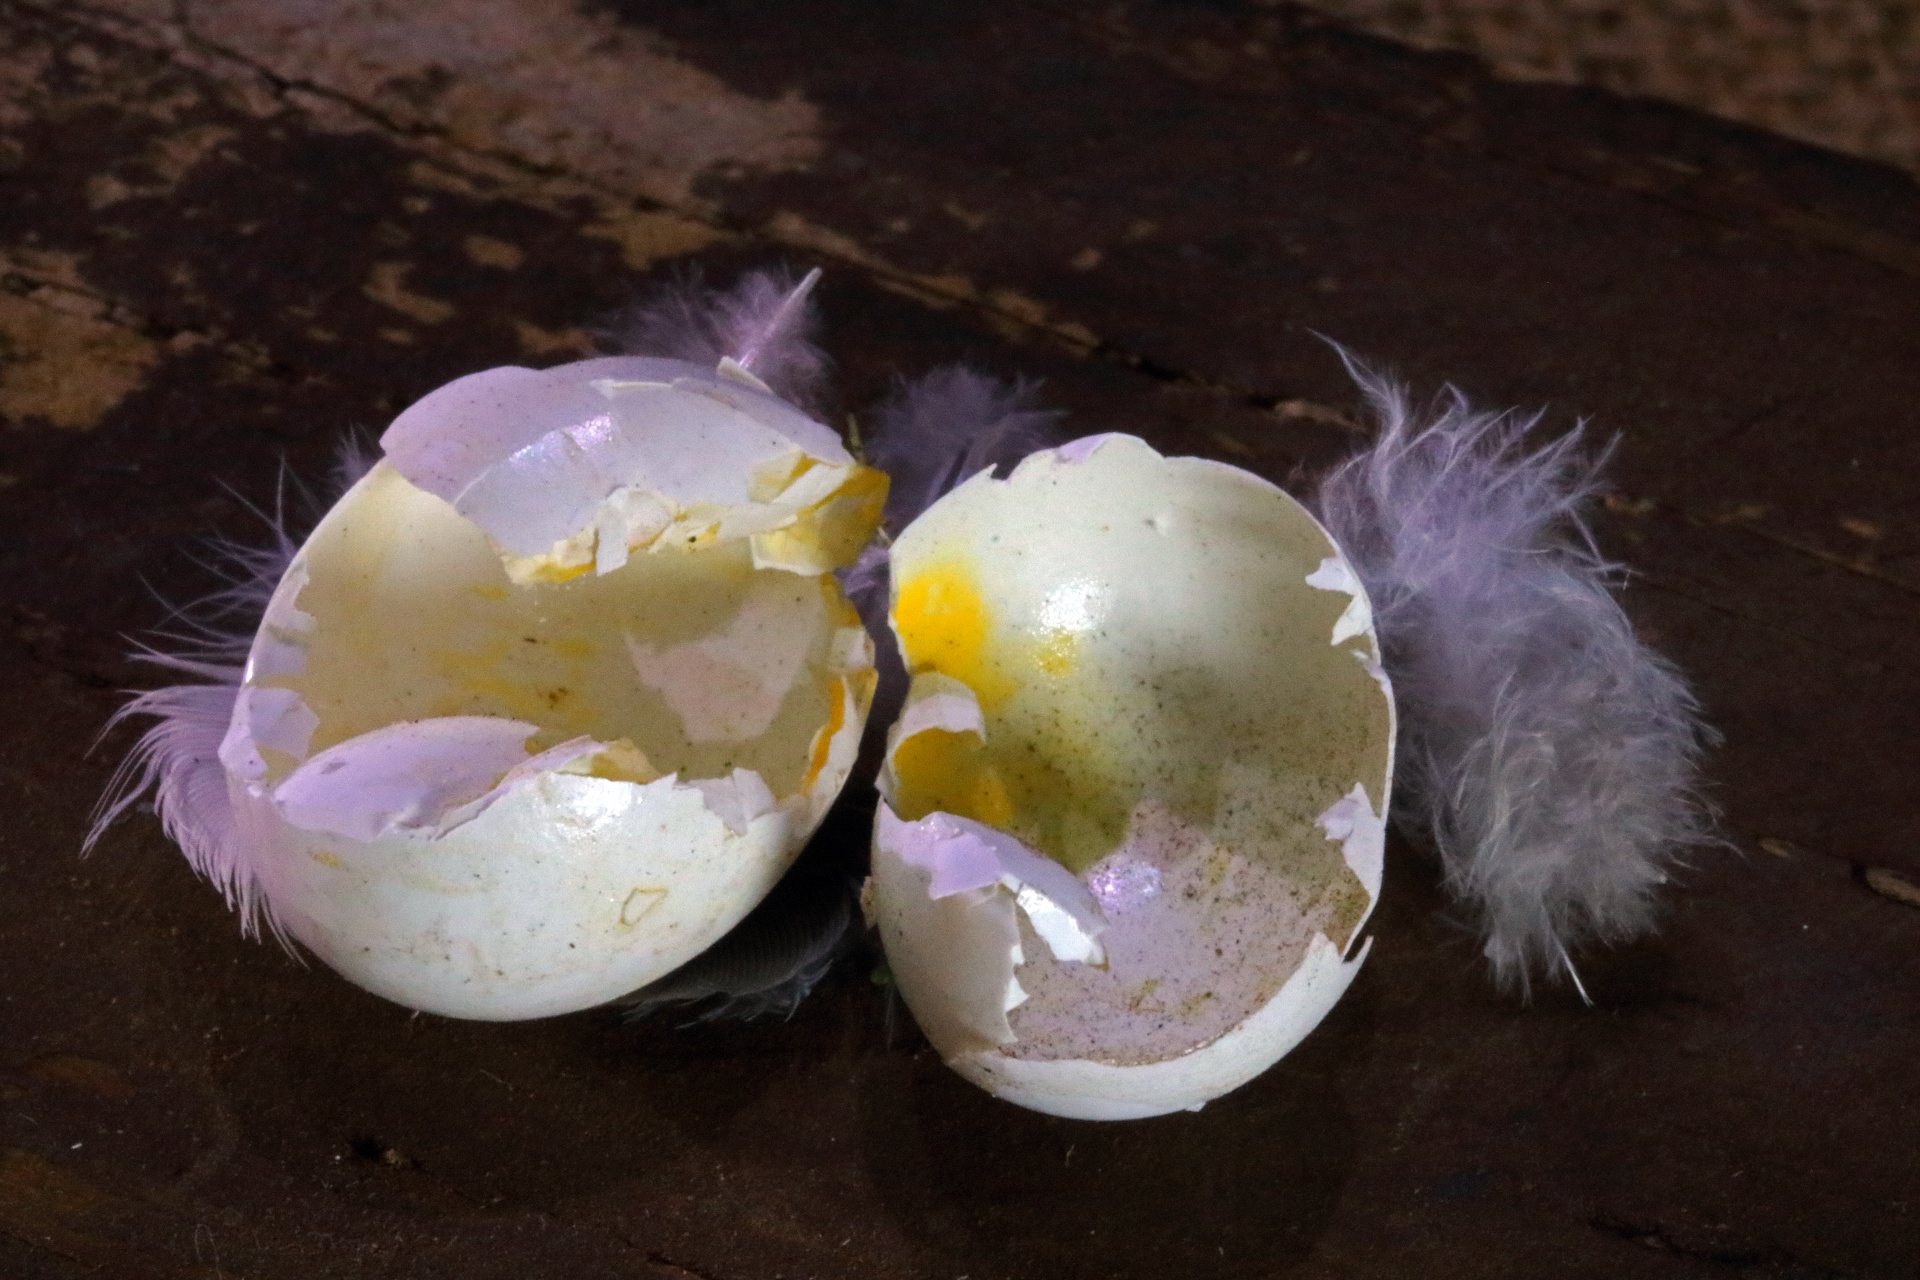 Broken Shells Of Dainty Bird's Egg